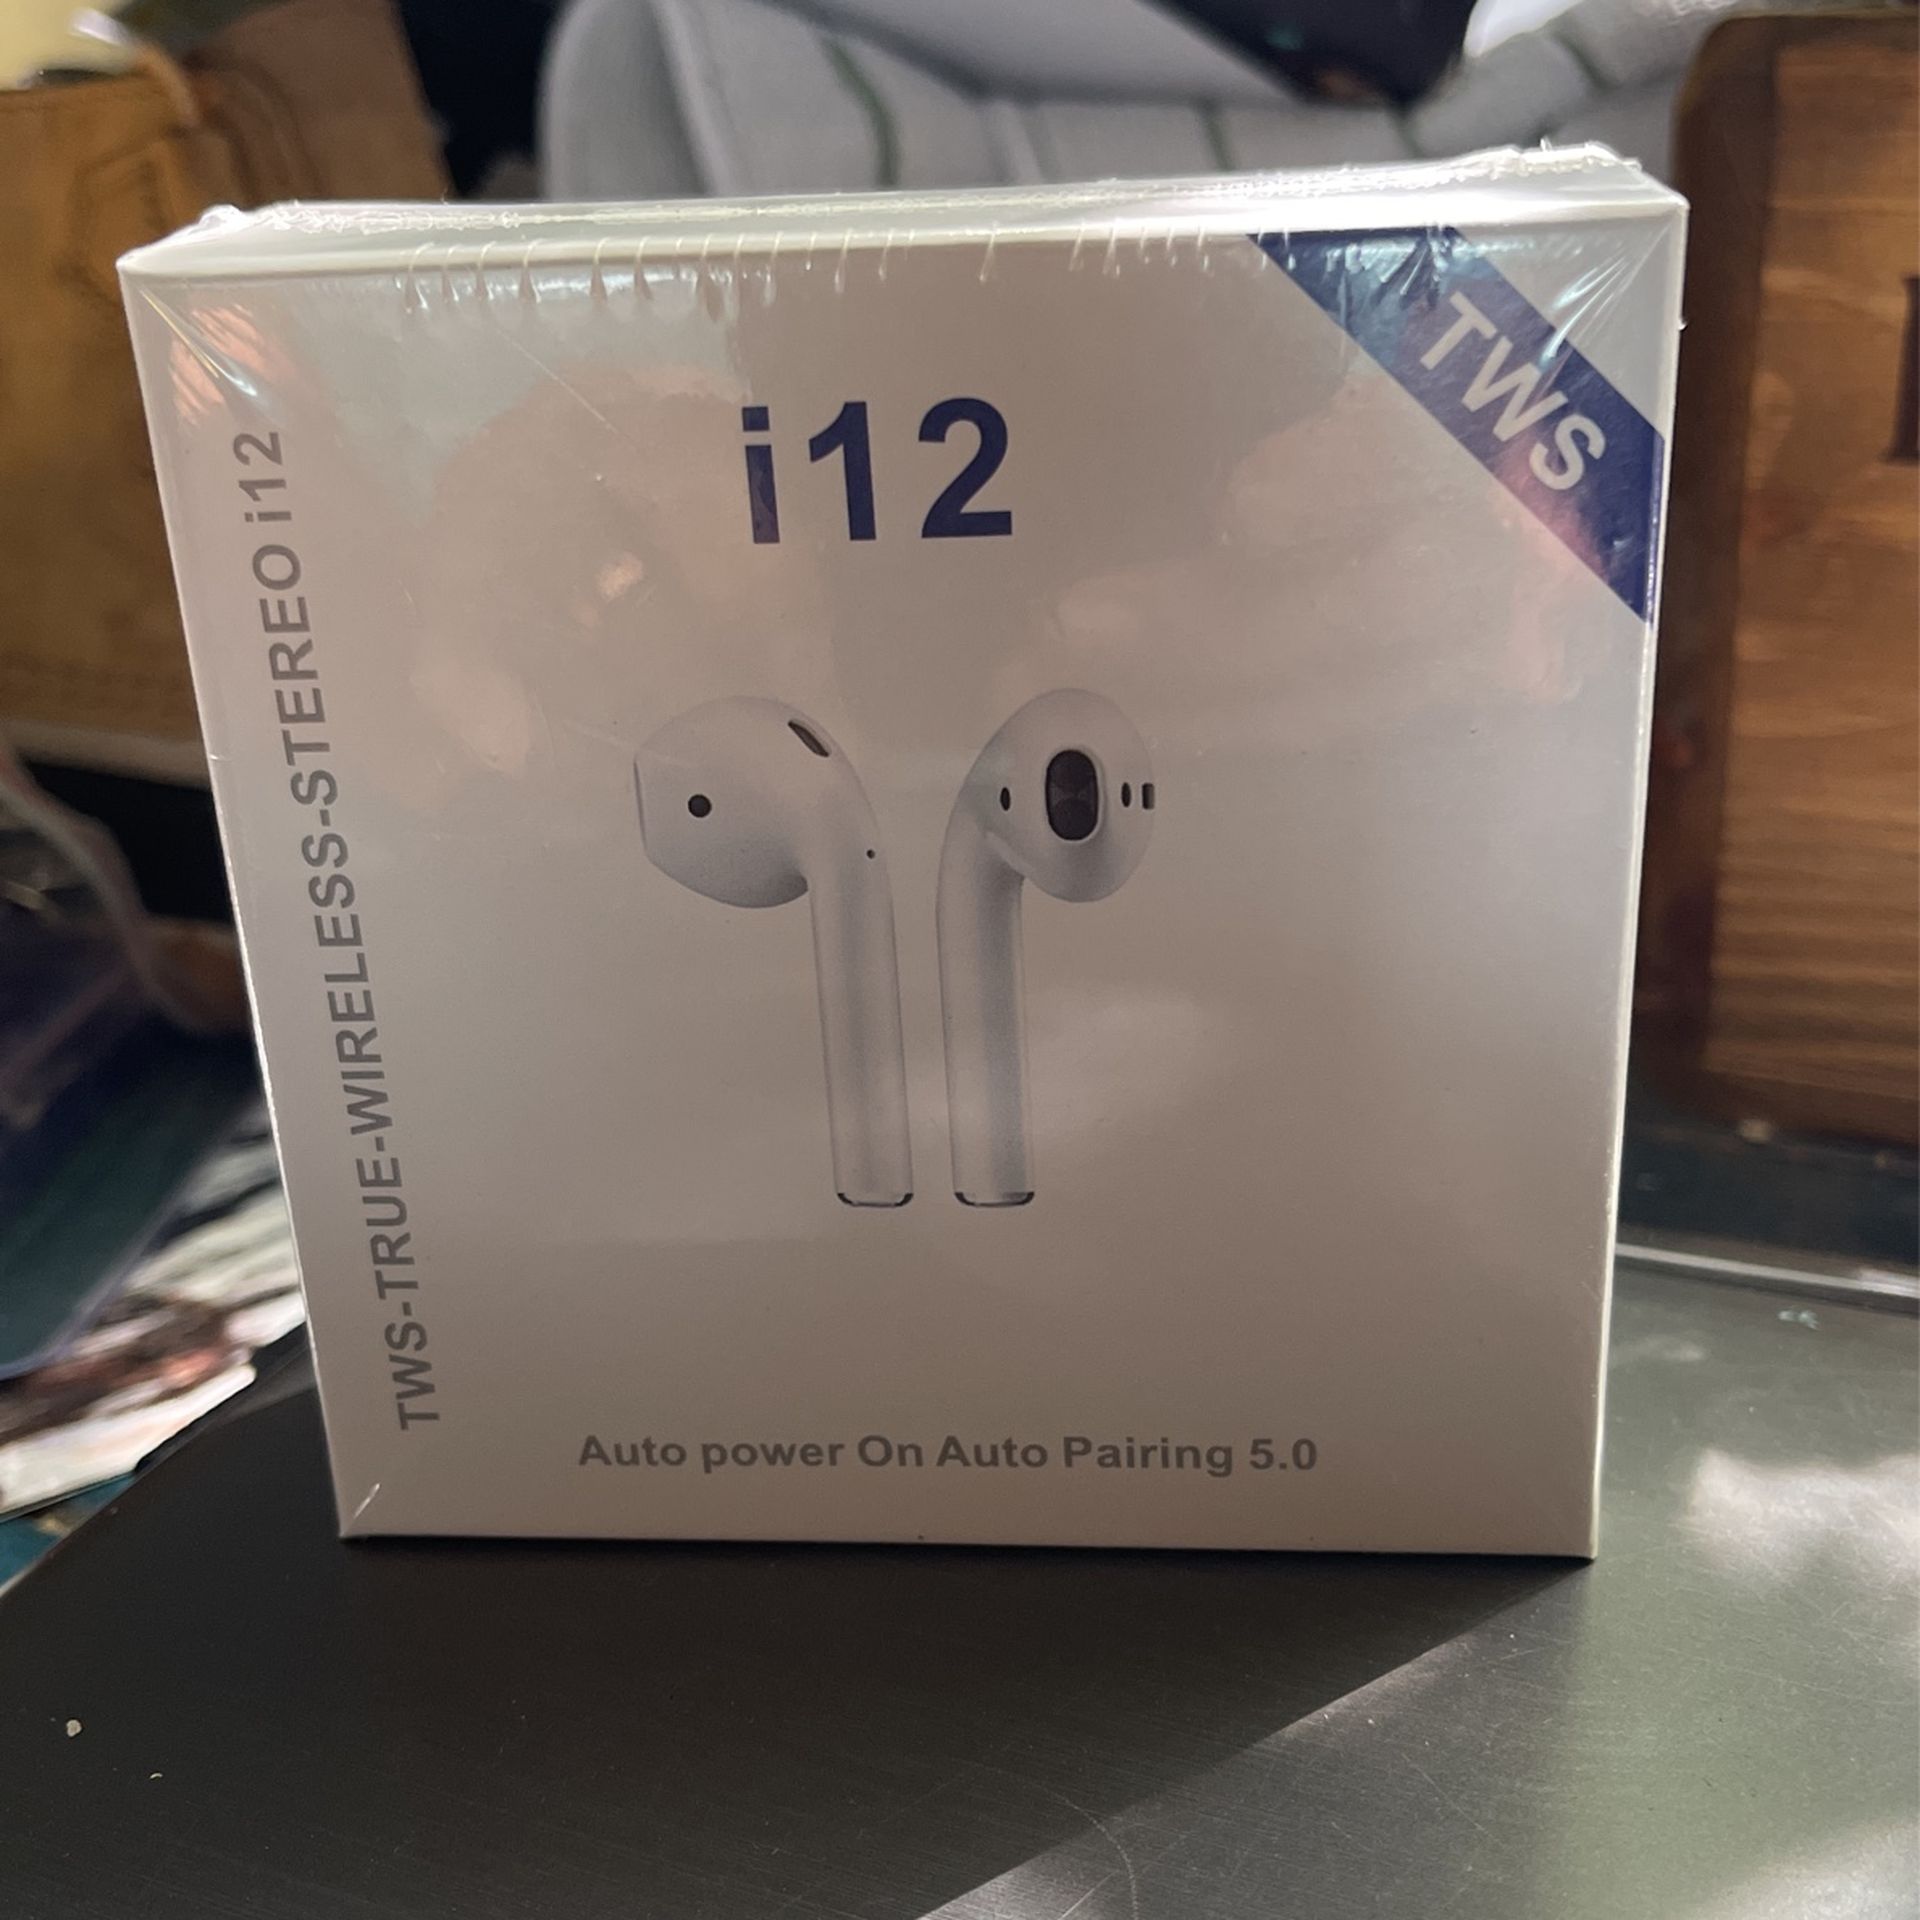 I 12 Wireless earbuds